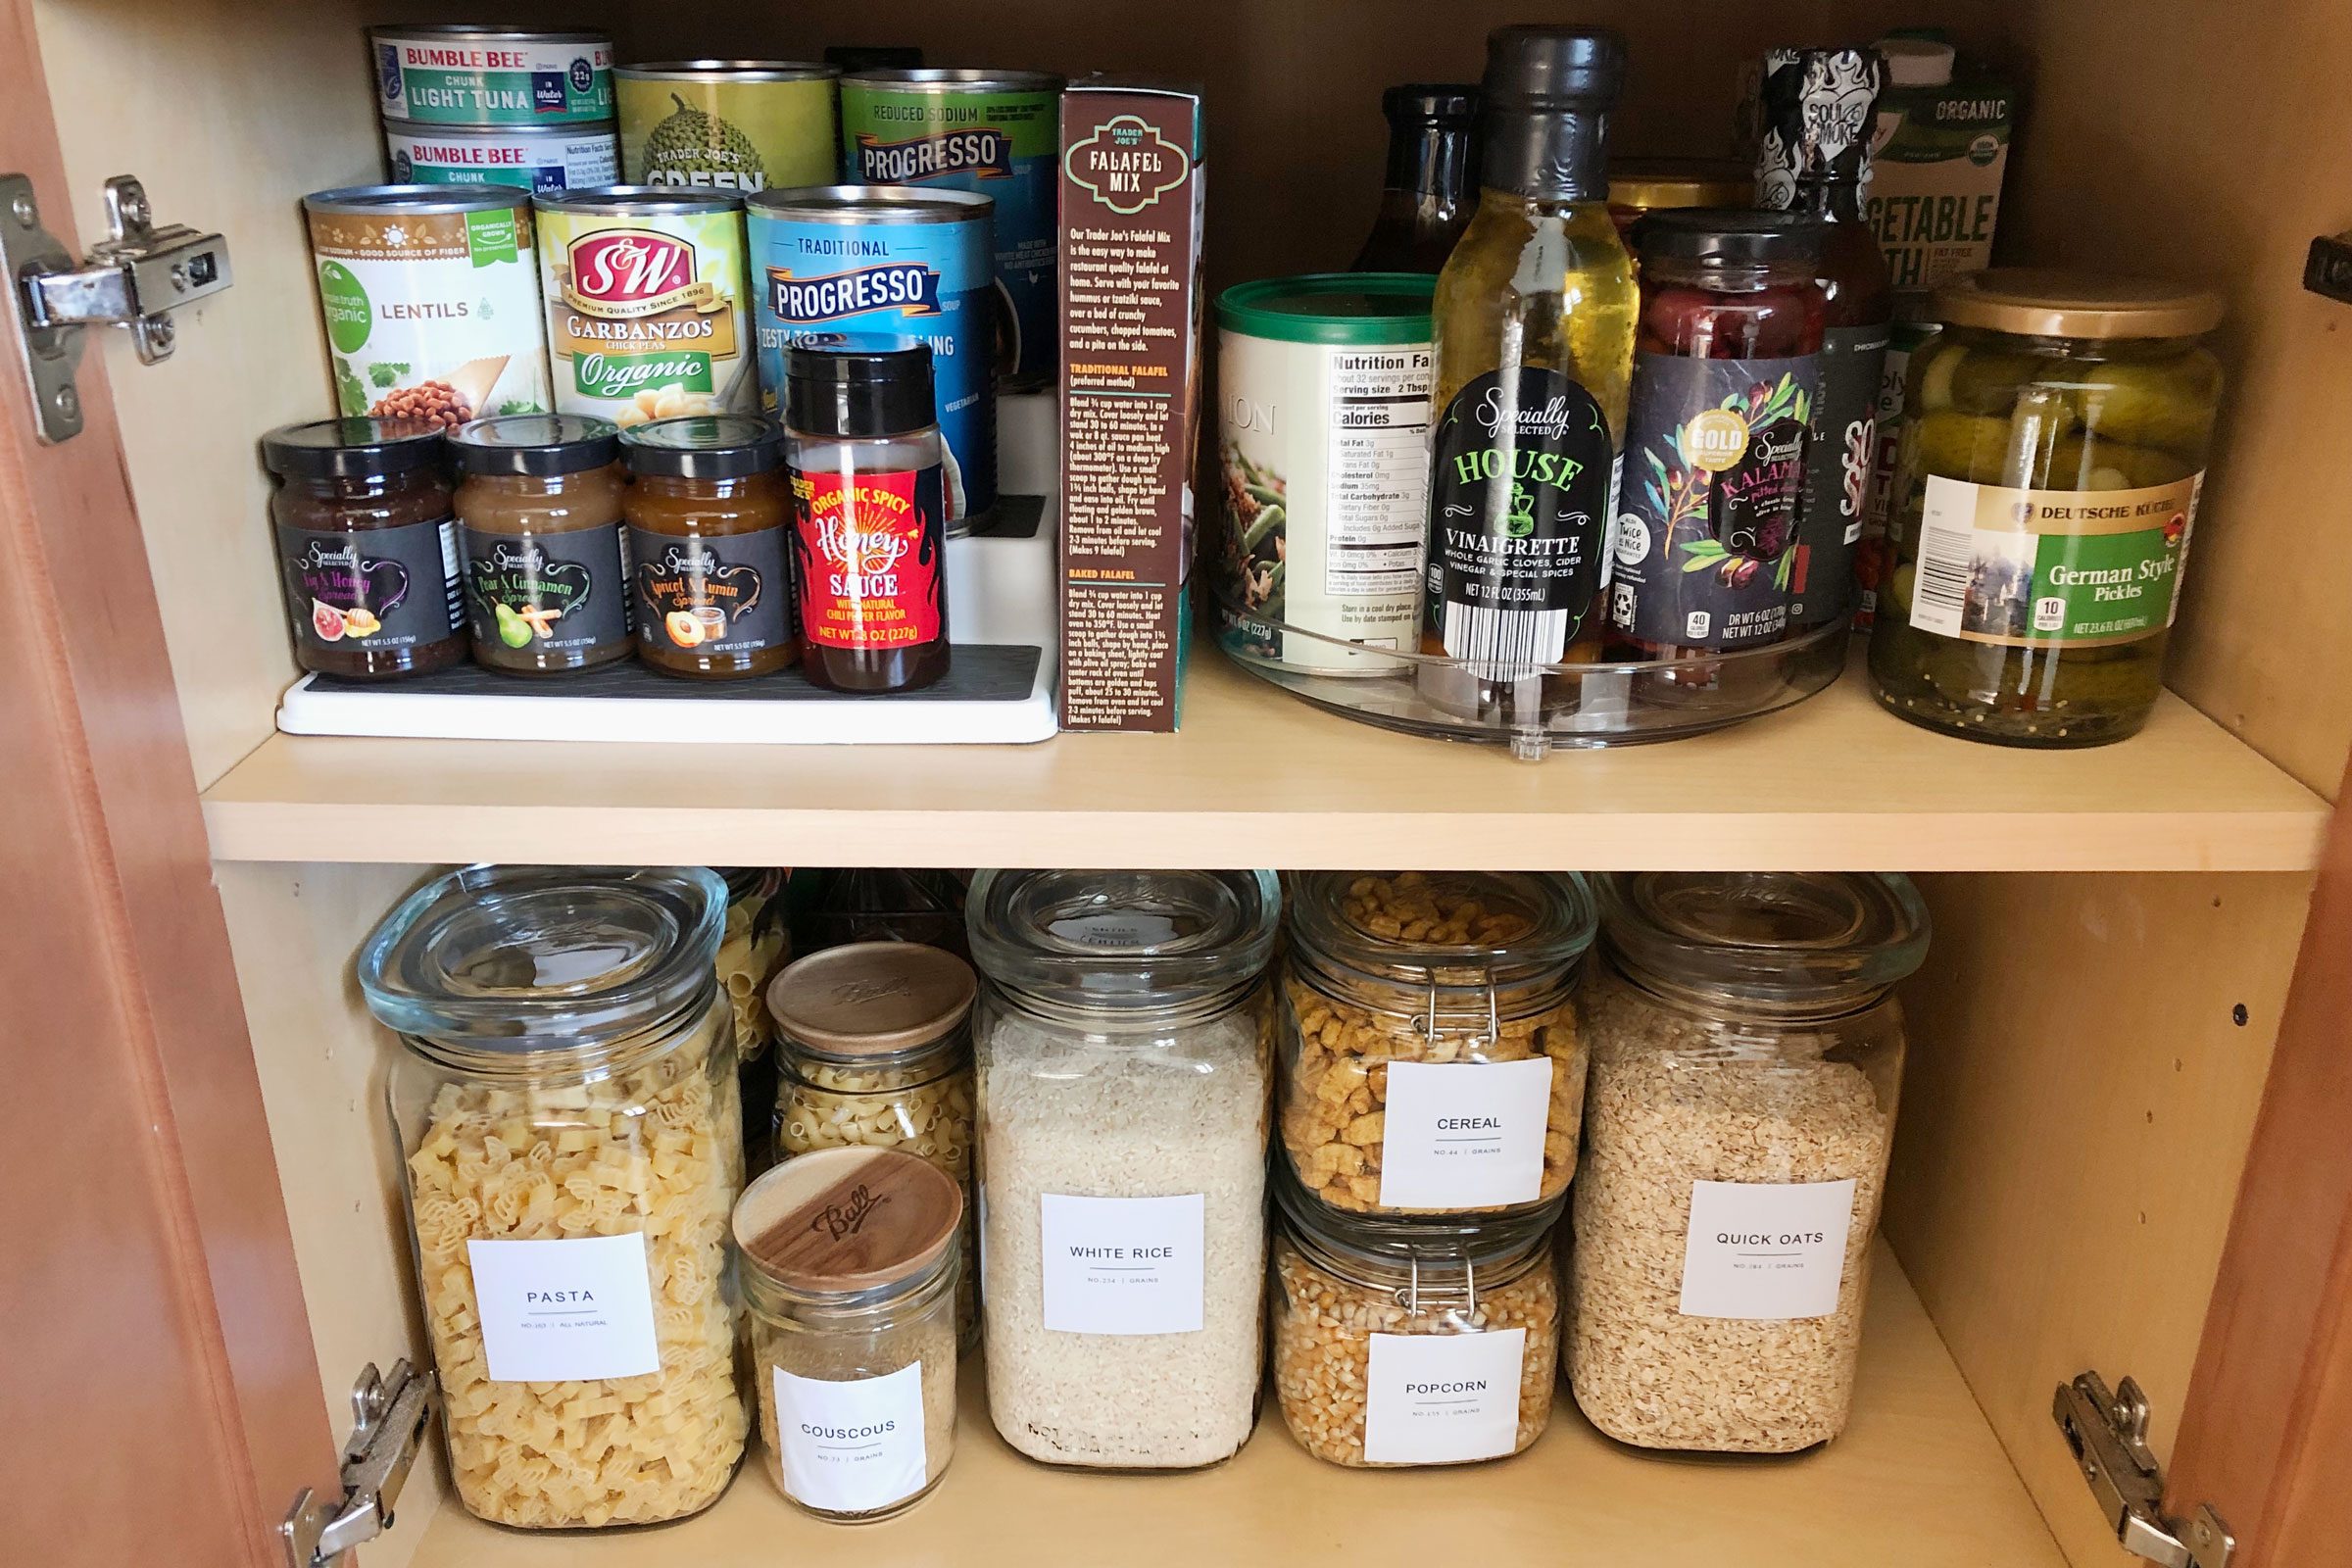 Mason Jar Organization in the Kitchen